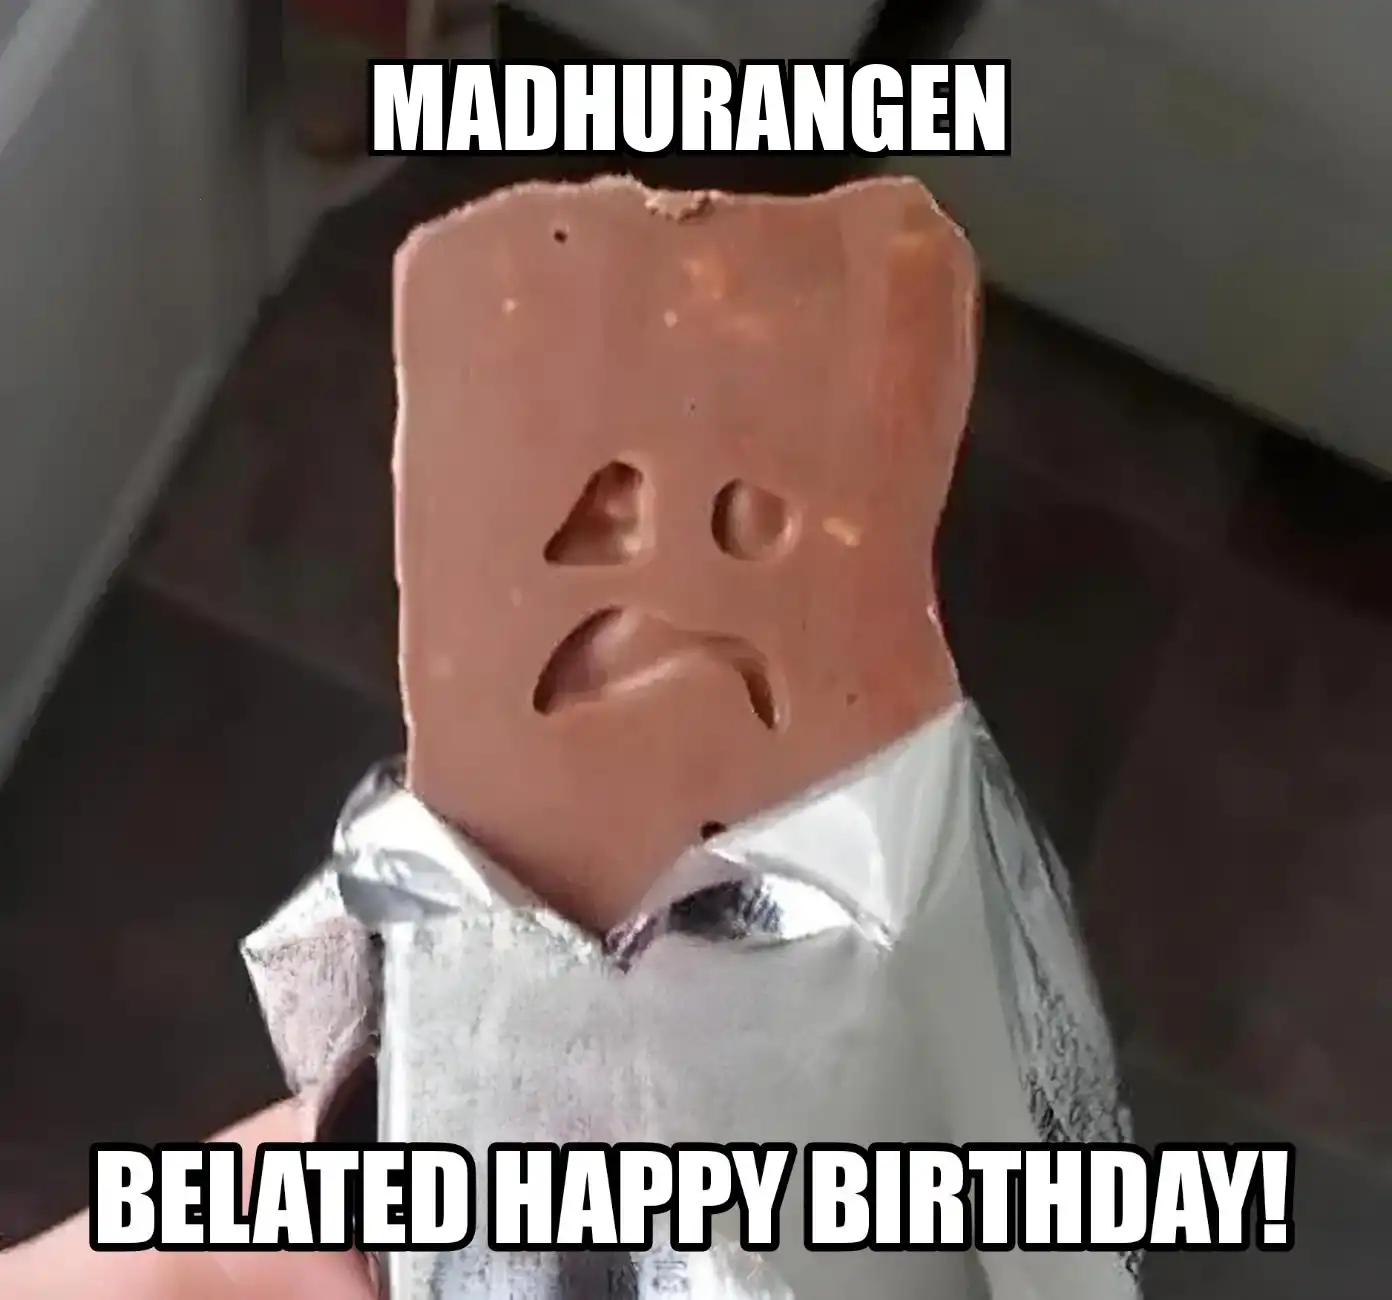 Happy Birthday Madhurangen Belated Happy Birthday Meme